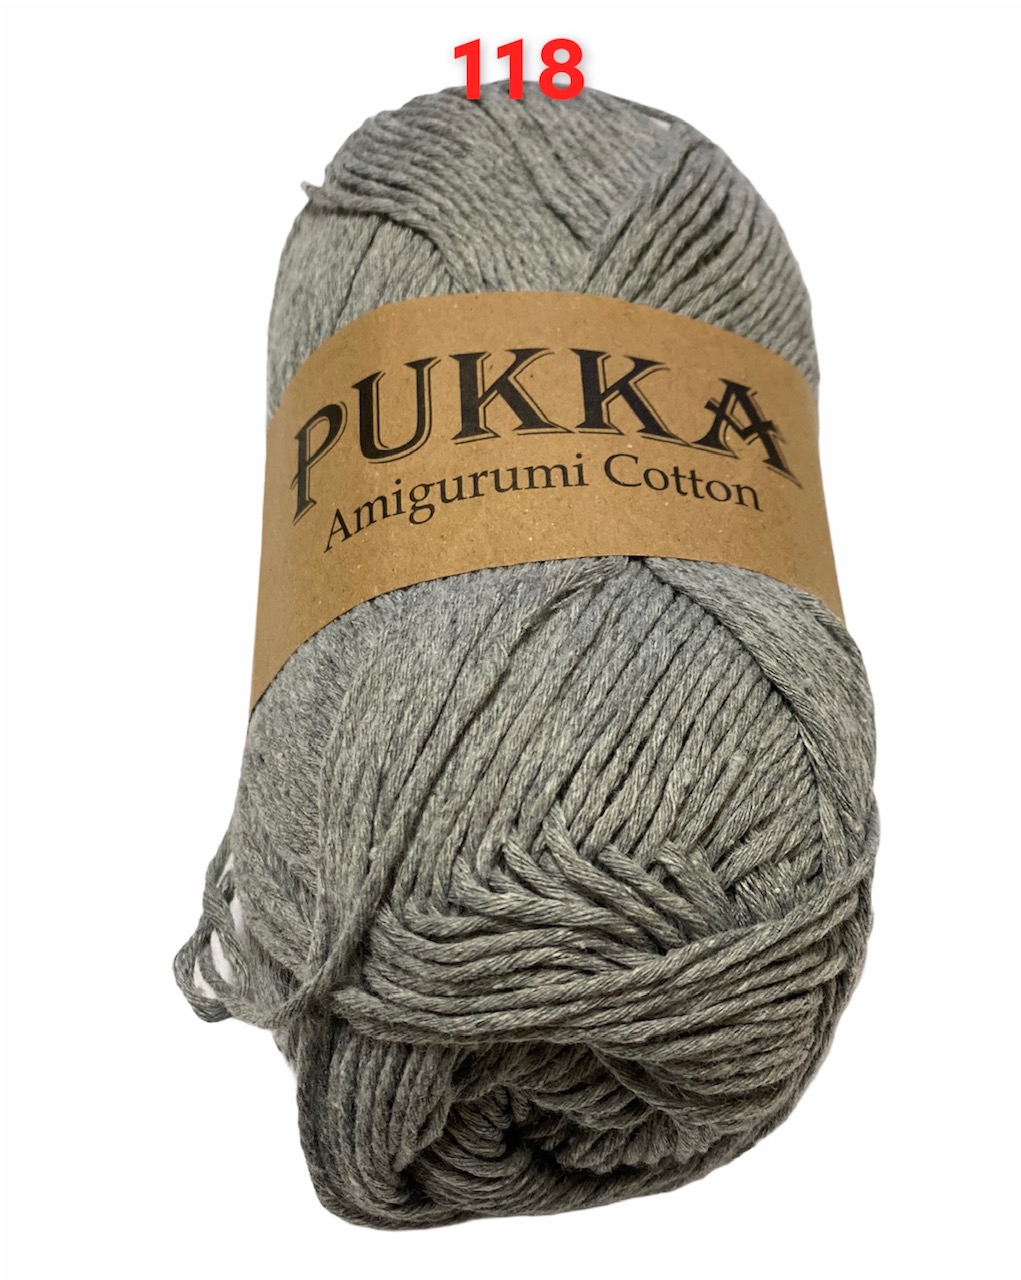 PUKKA Amigurumi Cotton 100g,118